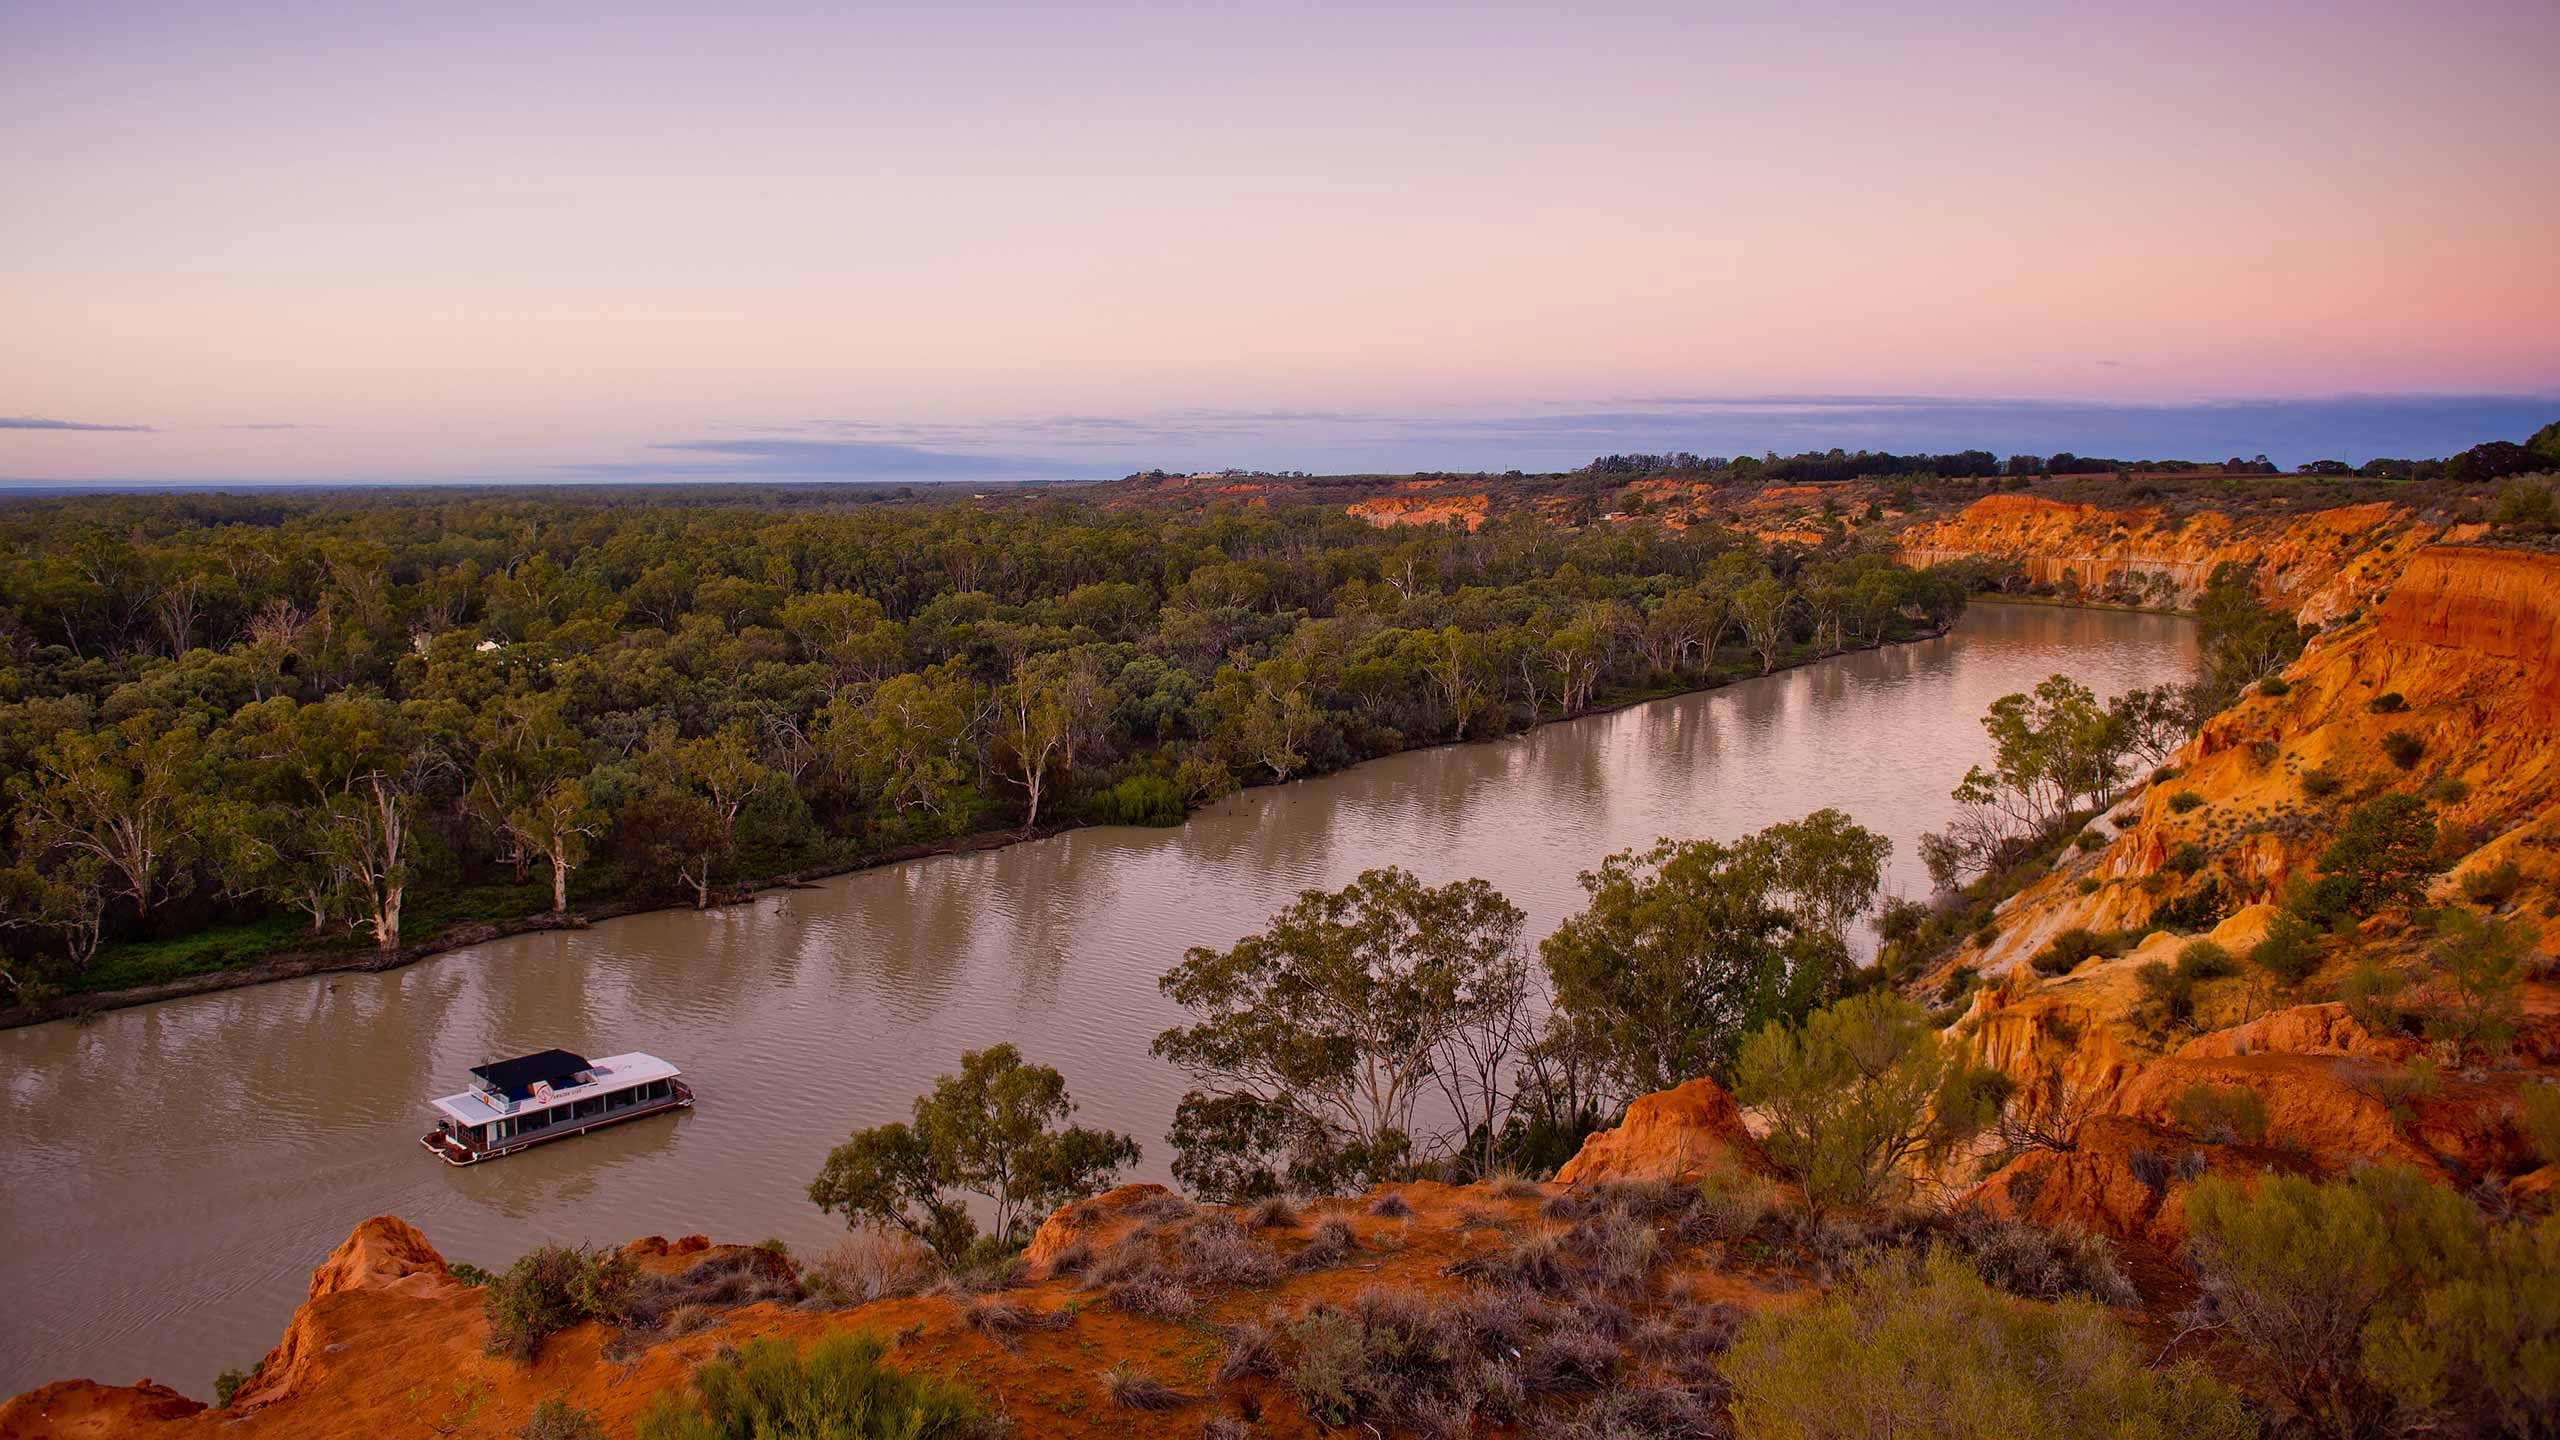 Реки озера австралии 7. Муррей и Дарлинг. Реки Дарлинг и Муррей. Река Муррей в Австралии. Река Дарлинг в Австралии.